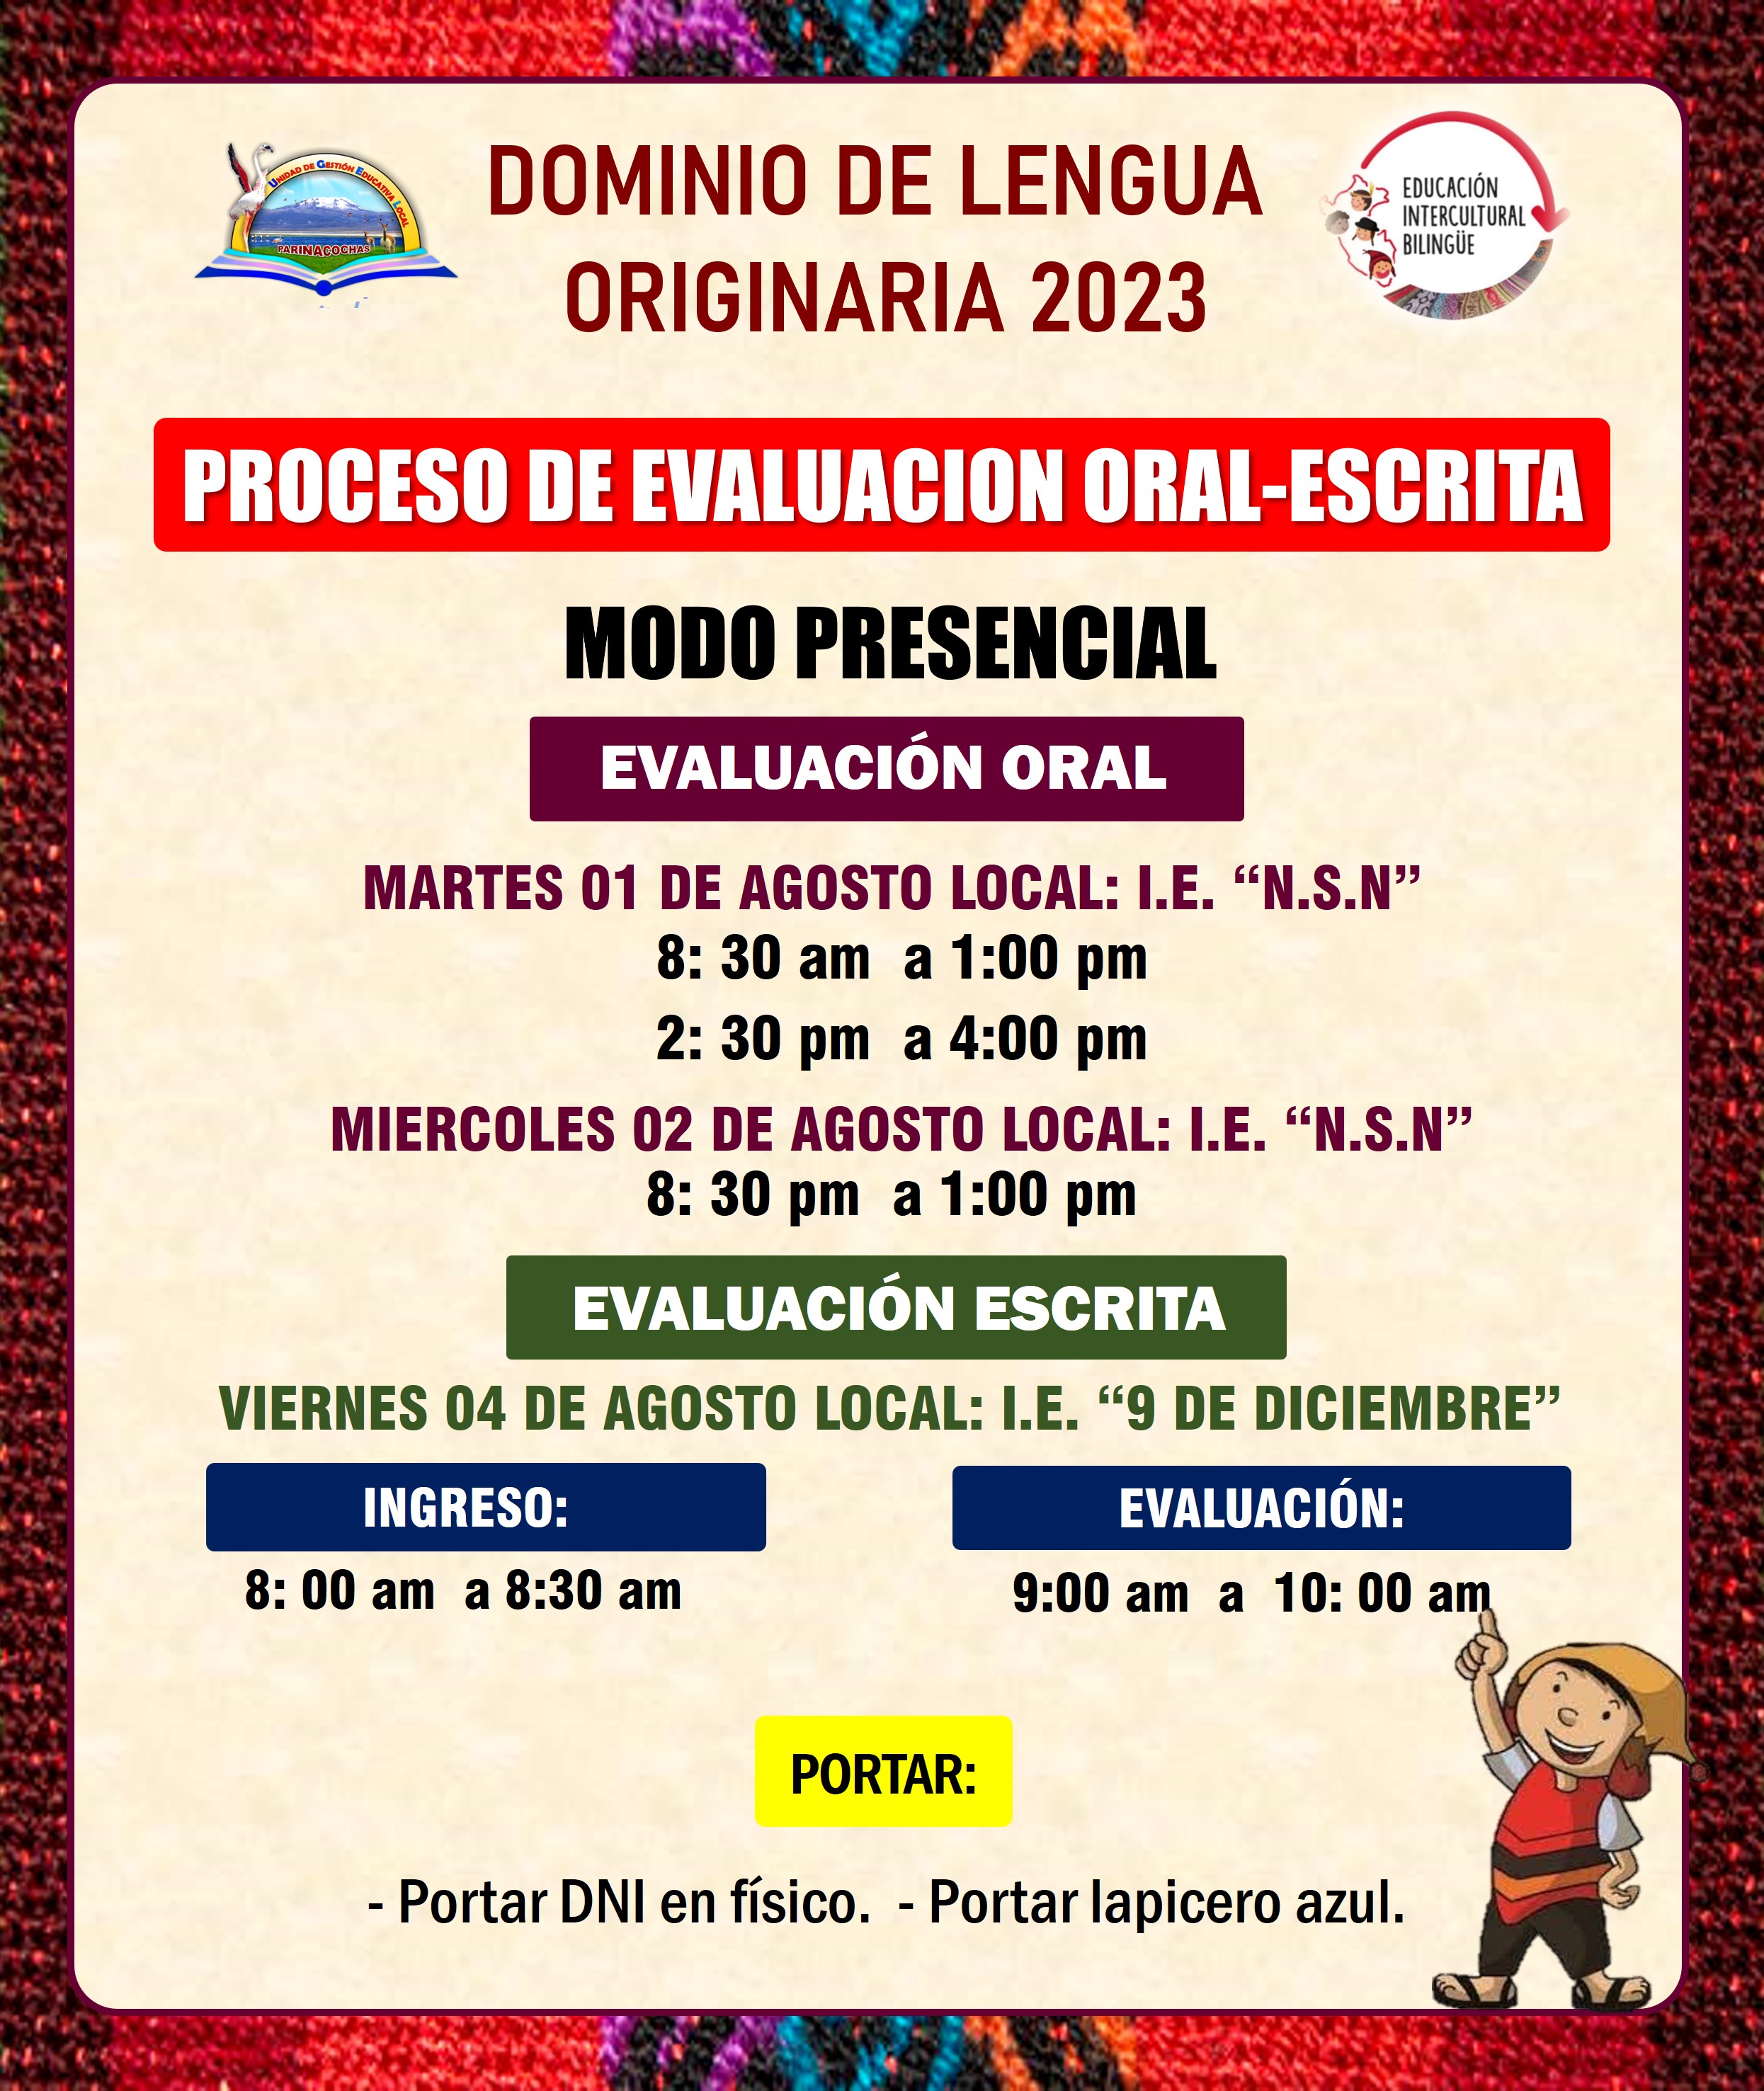 PROCESO DE EVALUACION EIB ORAL-ESCRITA